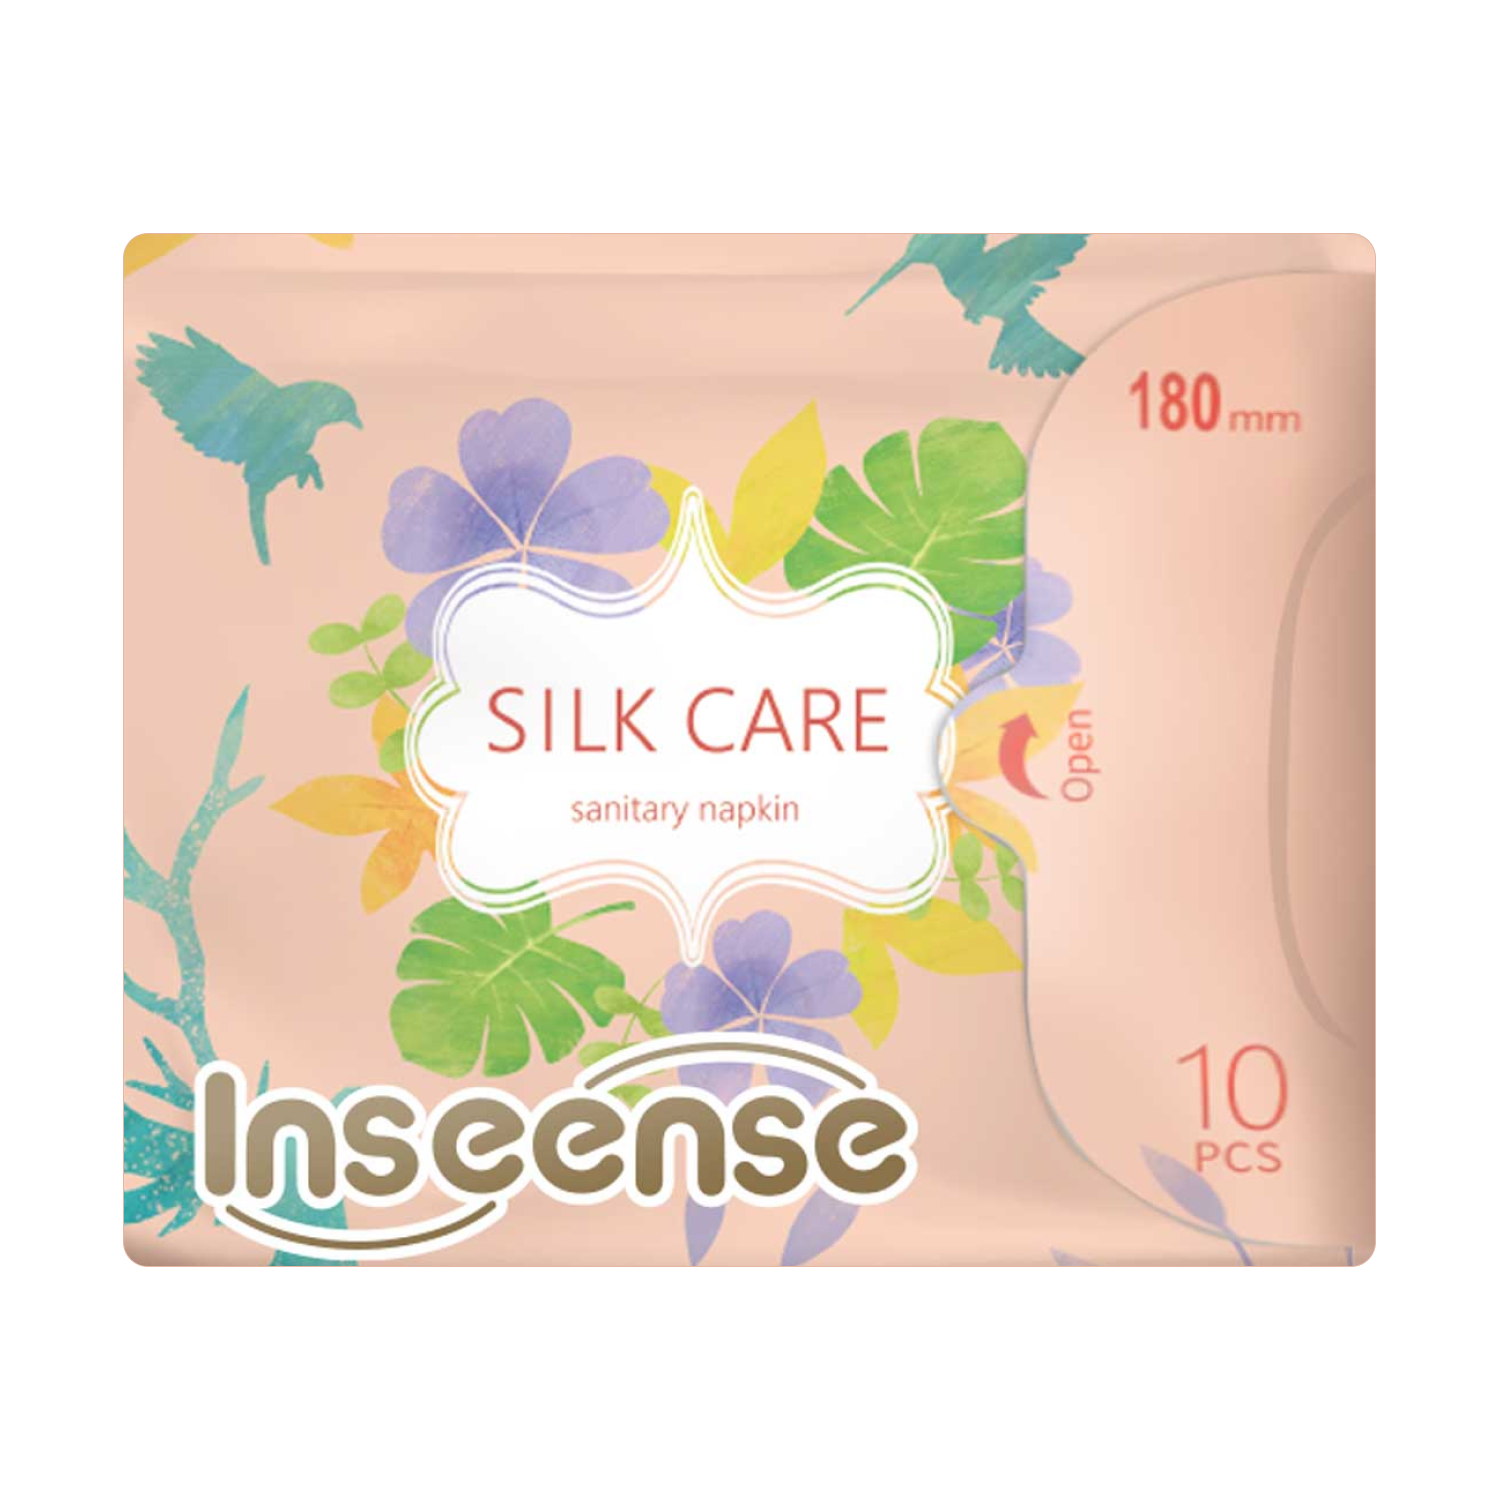 Прокладки INSEENSE Silk Care женские гигиенические ежедневные с крылышками 180 мм 10 шт.